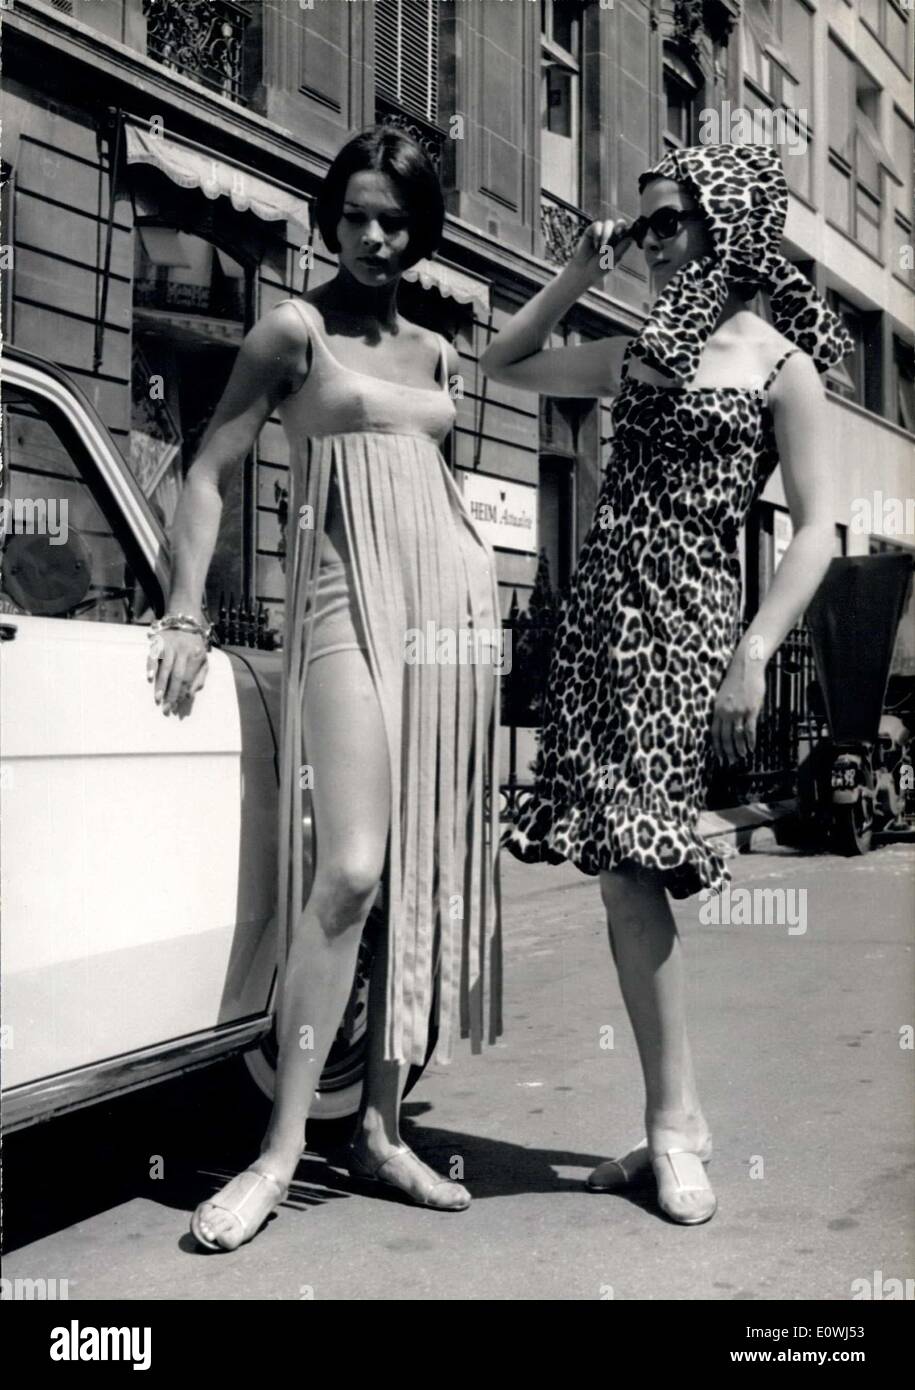 Le 08 mai 1963 - Station élégance : créateur de mode parisien Jacques Heim a présenté ce matin ses modèles de l'été 1963, qui distingue, coloré et pittoresque sera certainement repéré sur toutes les plages, de cannes à Deauville grâce à Biarritz. Photo montre la gauche ''Sun-dress'' et R. L'un des ''Panther' Banque D'Images